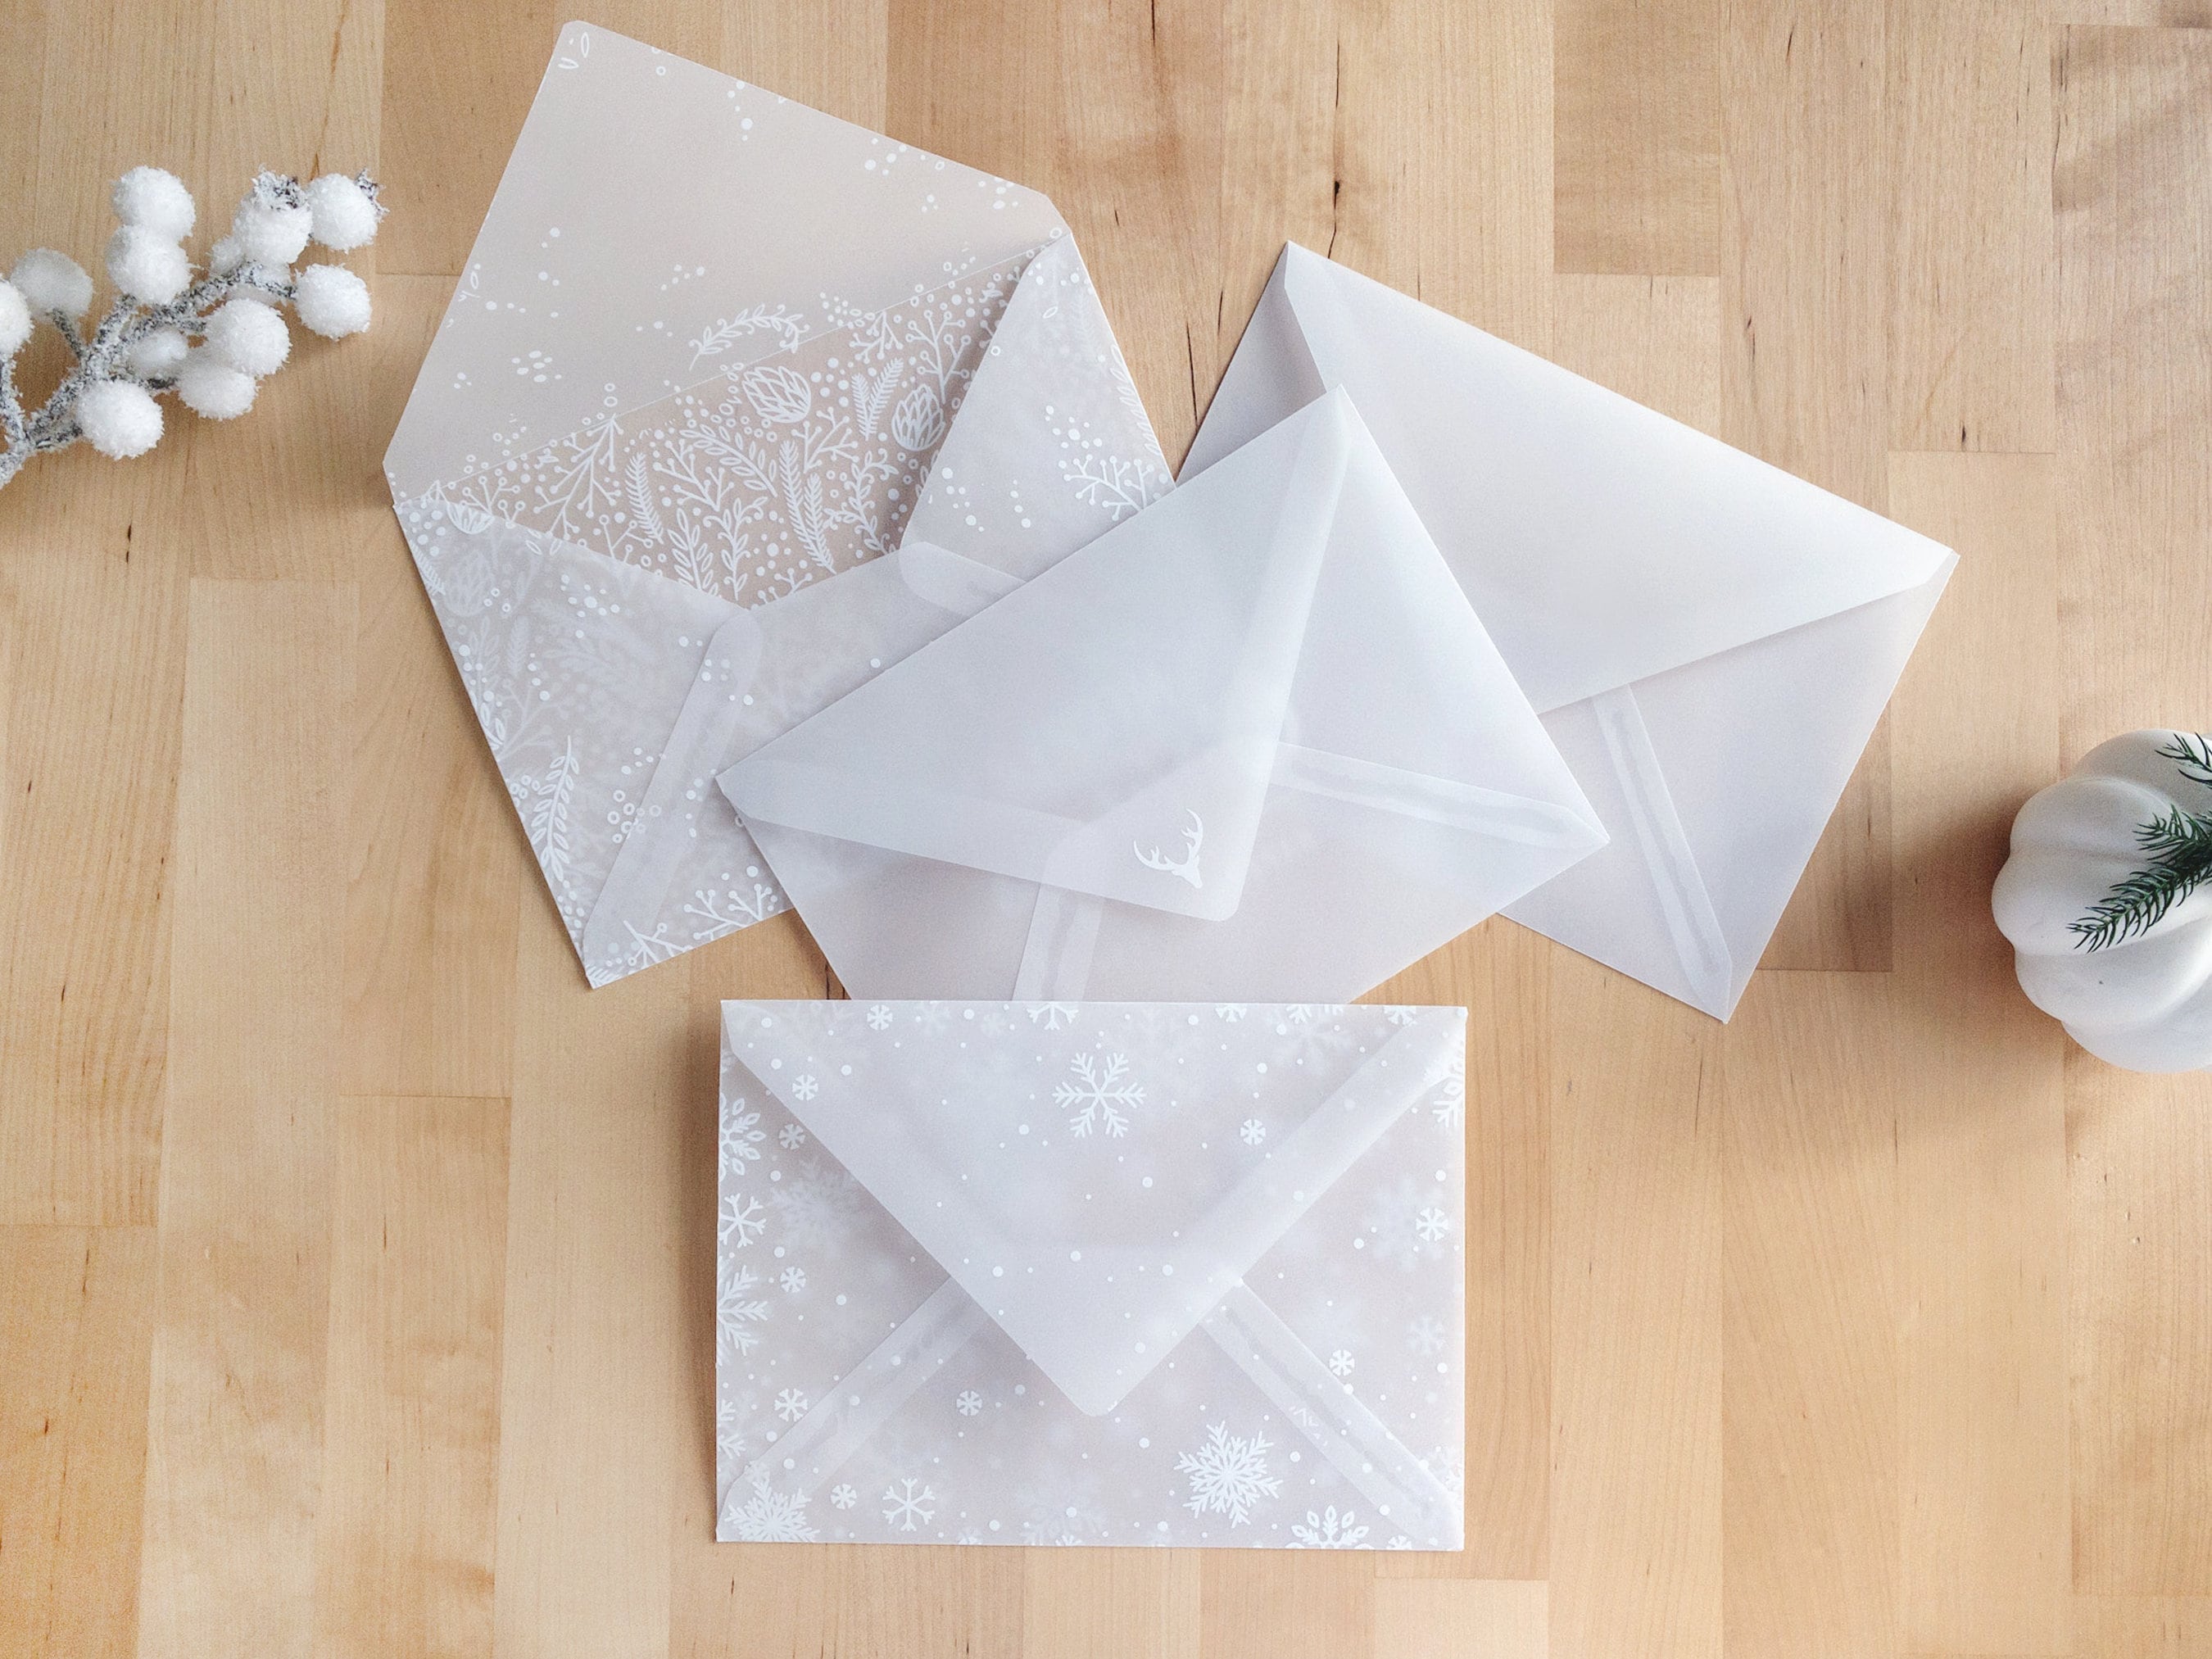  Tofficu 1 Set Envelope Letter Paper Vellum Envelopes